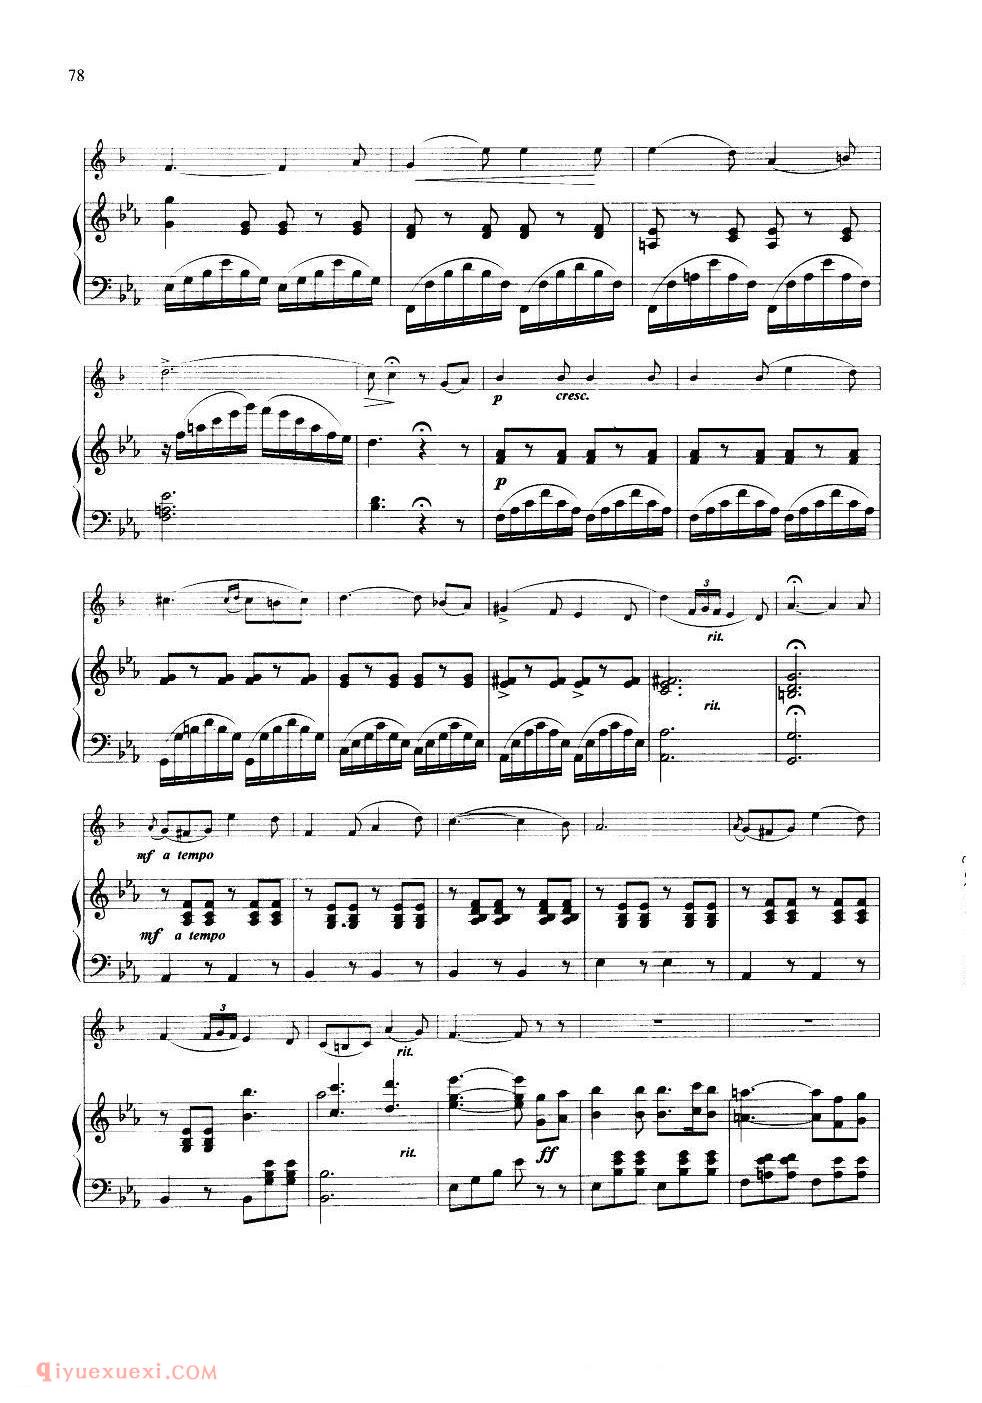 《威尼斯狂欢节幻想变奏曲》[法]阿尔班曲/J.B.Arban